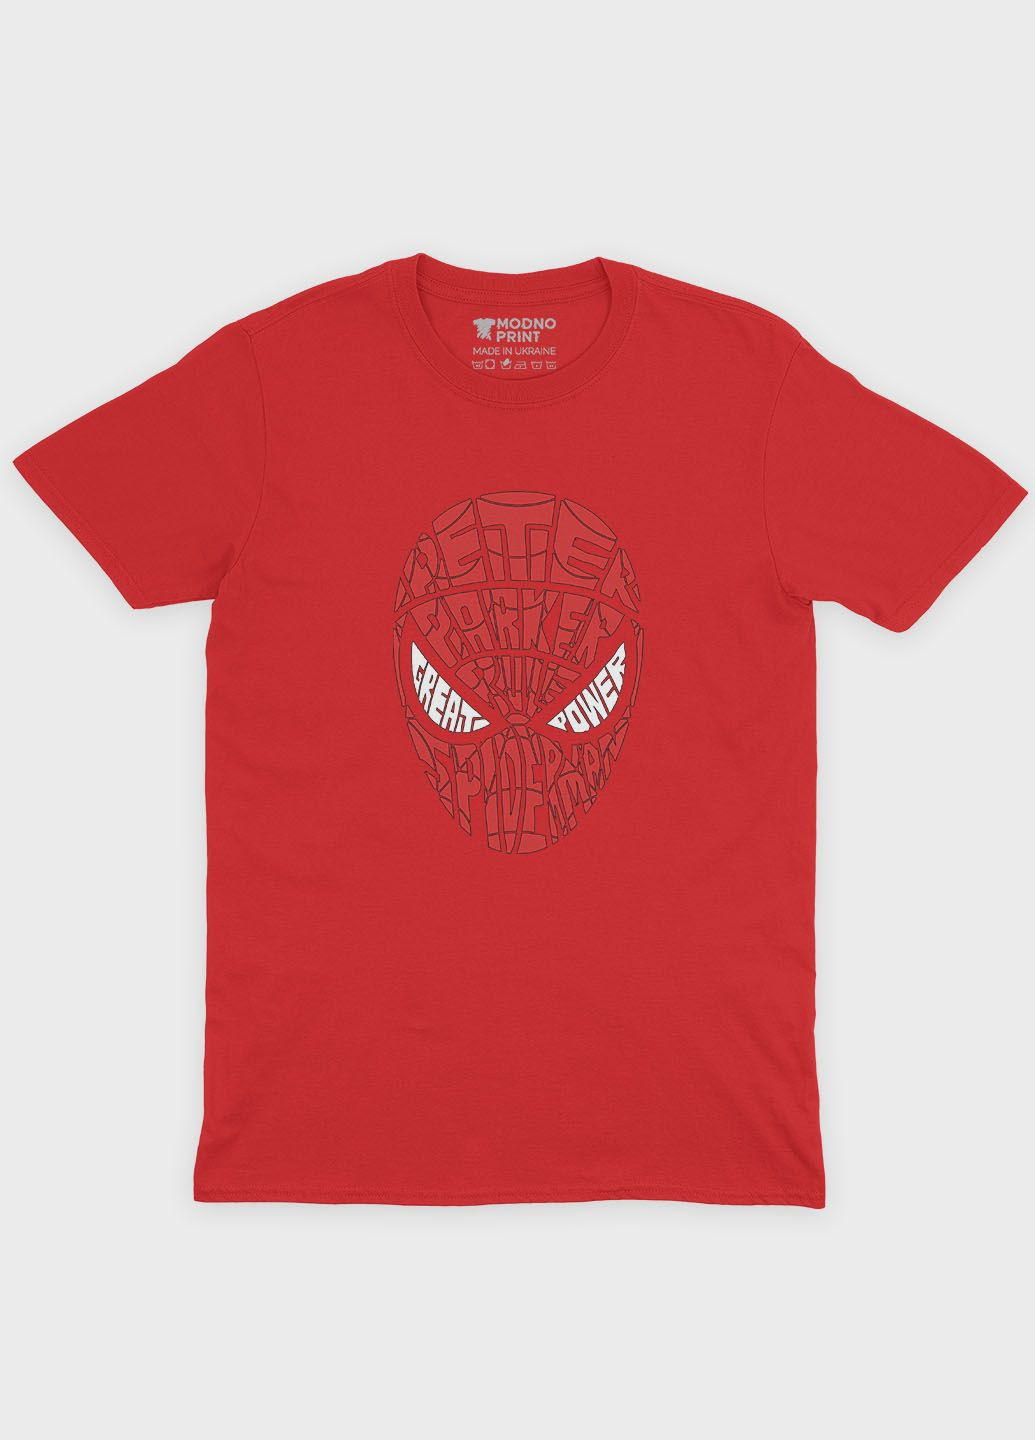 Красная демисезонная футболка для мальчика с принтом супергероя - человек-паук (ts001-1-sre-006-014-002-b) Modno